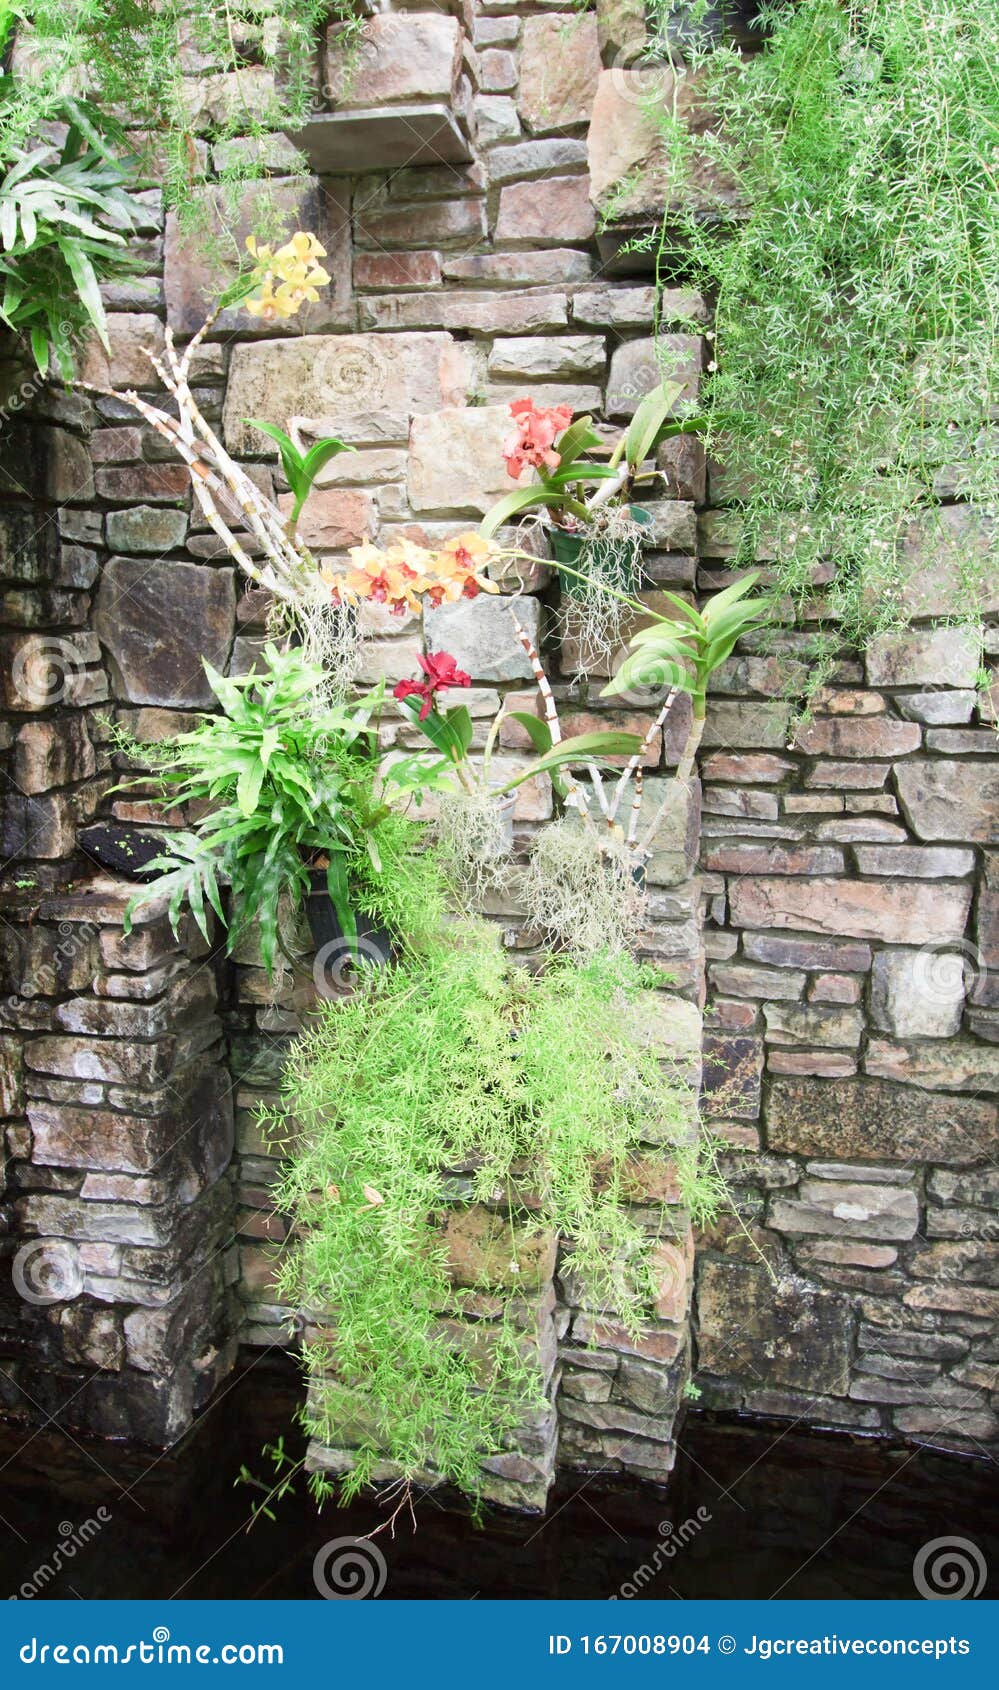 Papel de Parede Muro de Pedras Decorativas com Orquídeas, Fácil e Prático